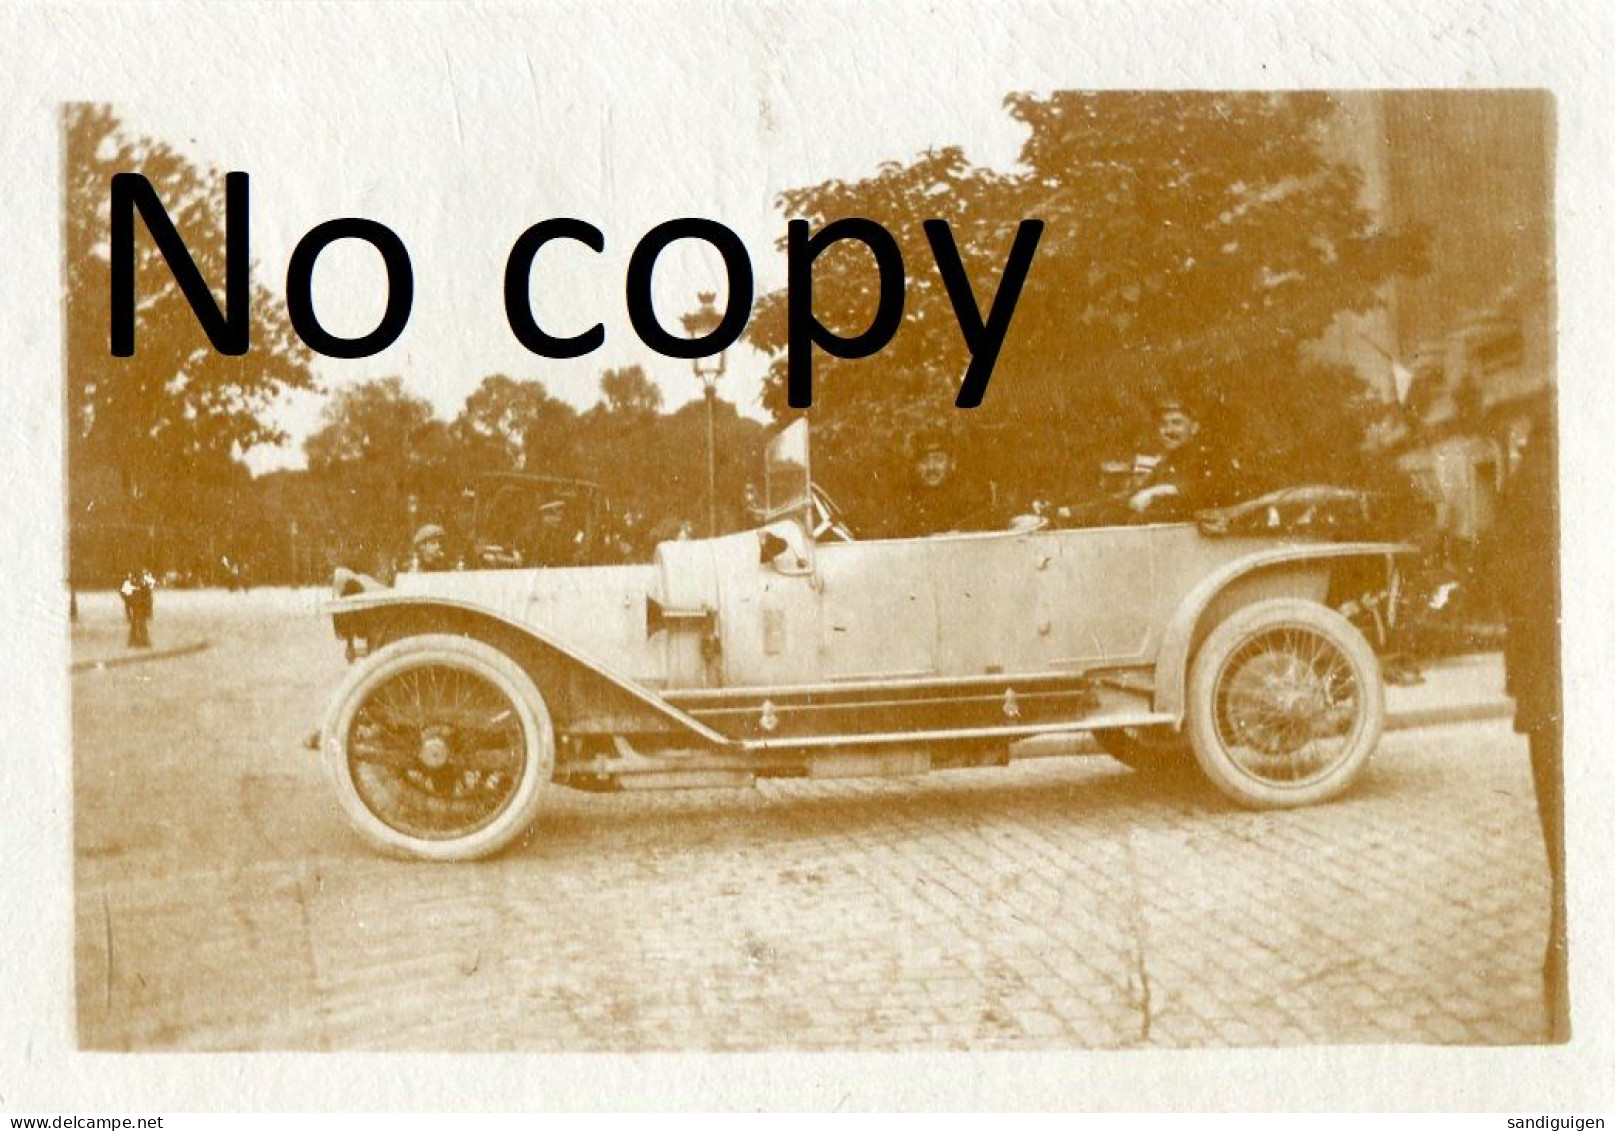 PHOTO FRANCAISE - A LYON RHONE - OFFICIER EN AUTOMOBILE PARTANT POUR LE REGIMENT LE 2 AOUT 1914 - GUERRE 1914 1918 - Guerre, Militaire